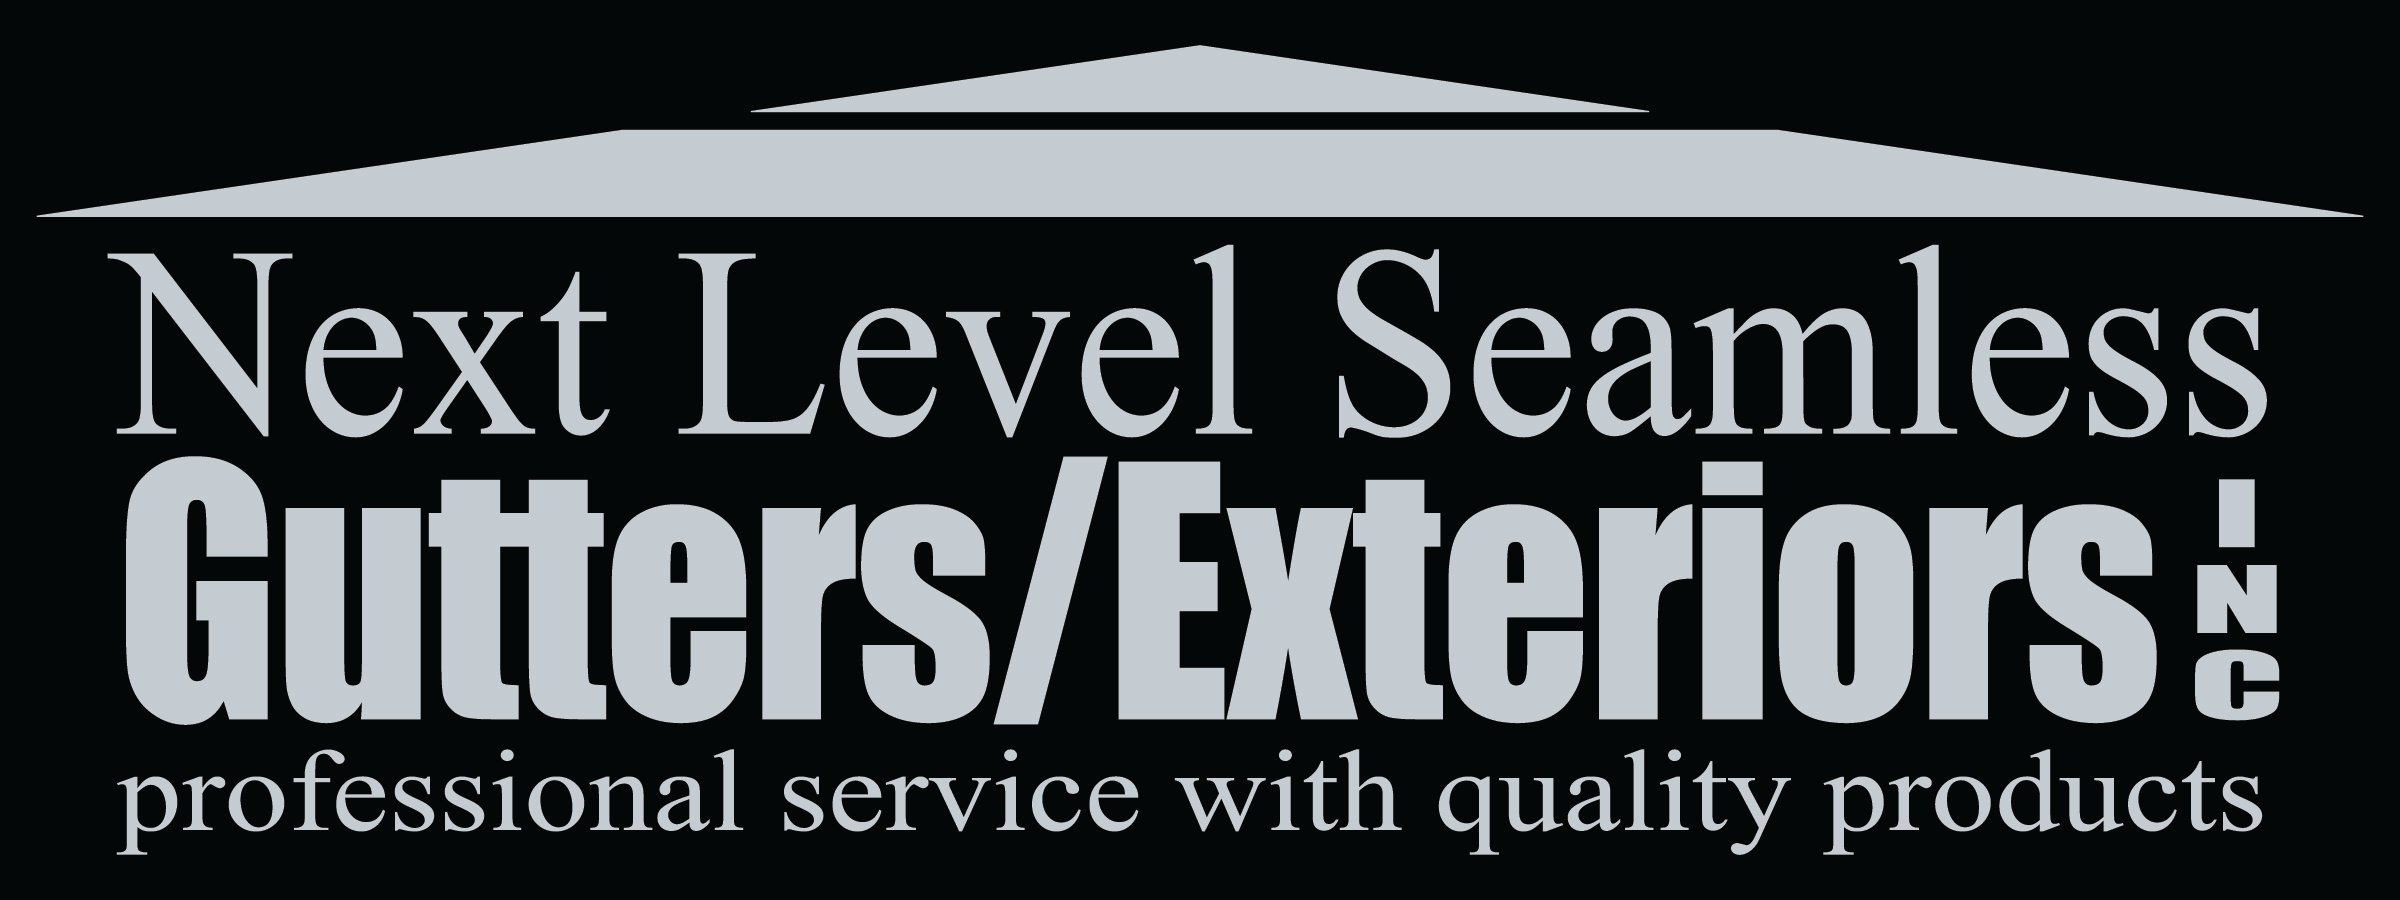 Next Level Seamless Gutters/Exteriors, Inc. Logo